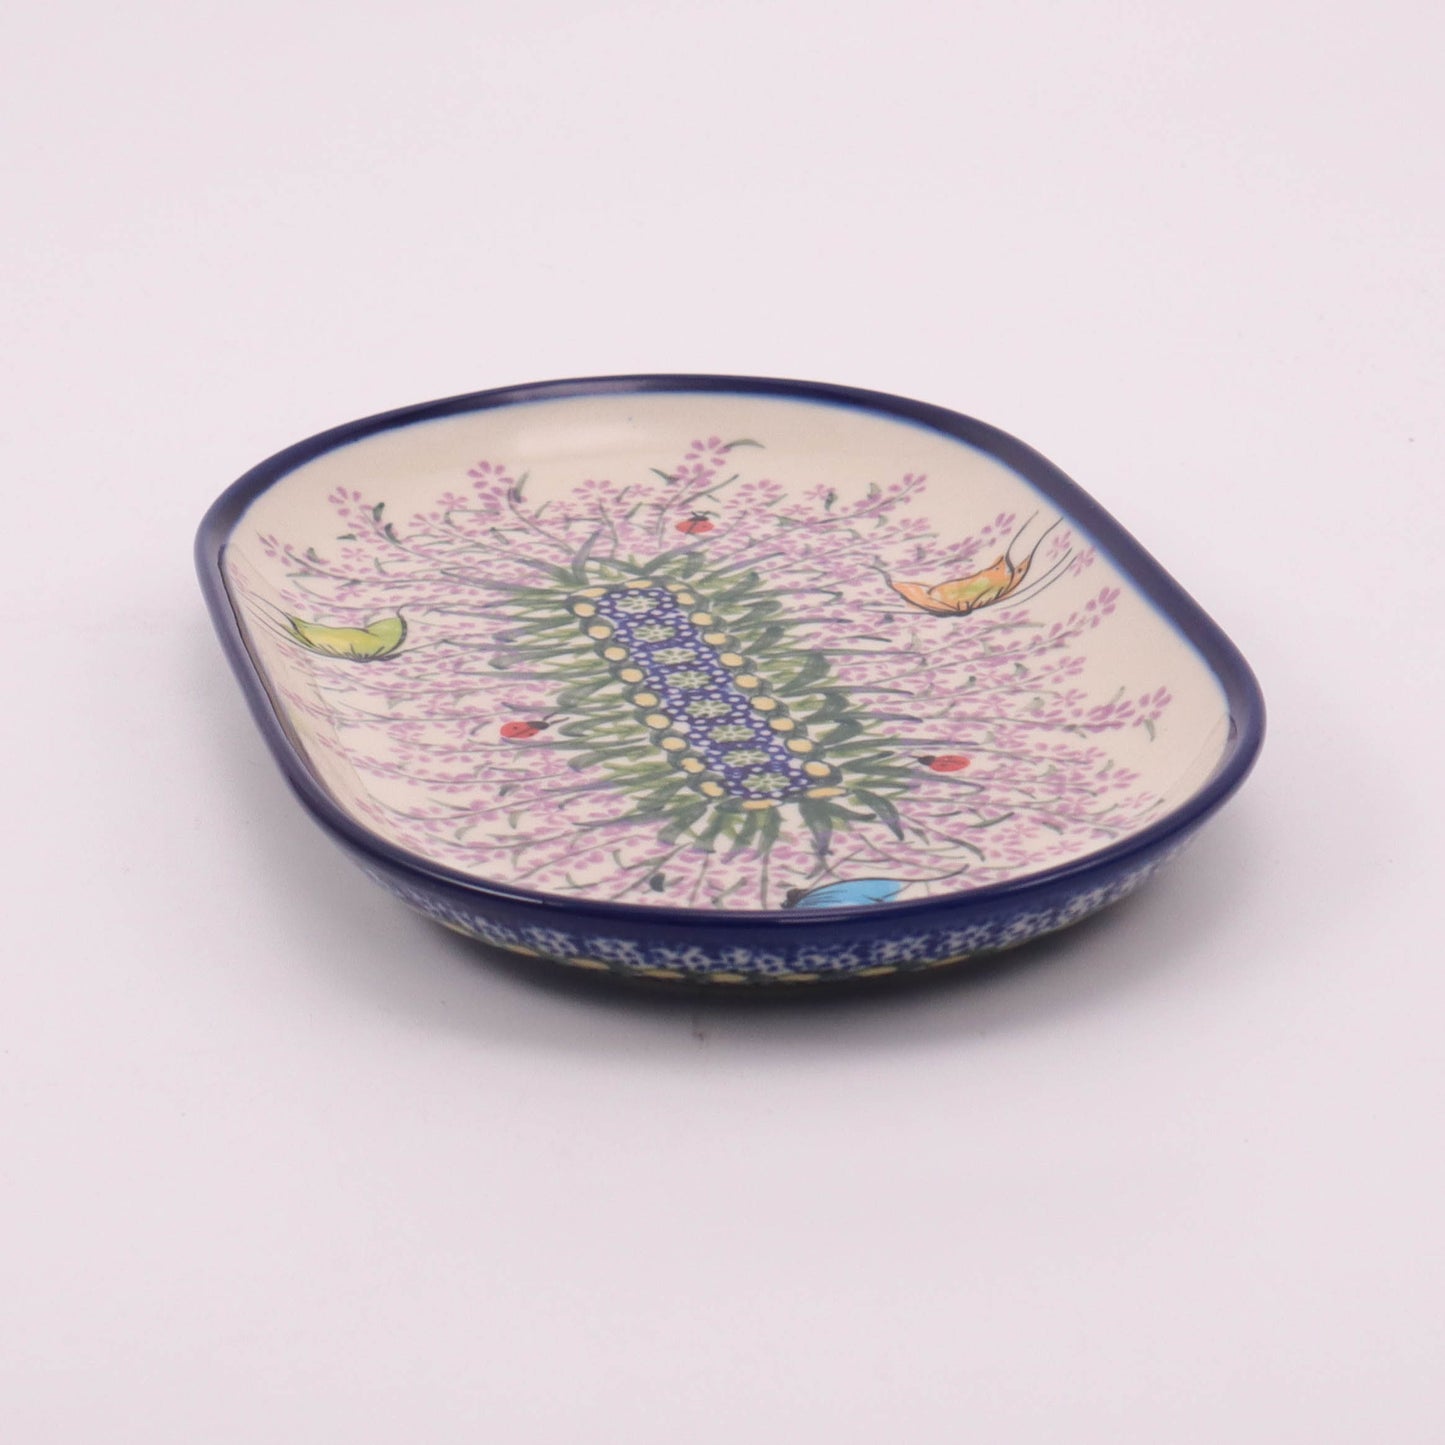 9"x5.5" Oval Platter. Pattern: Lavender Fields